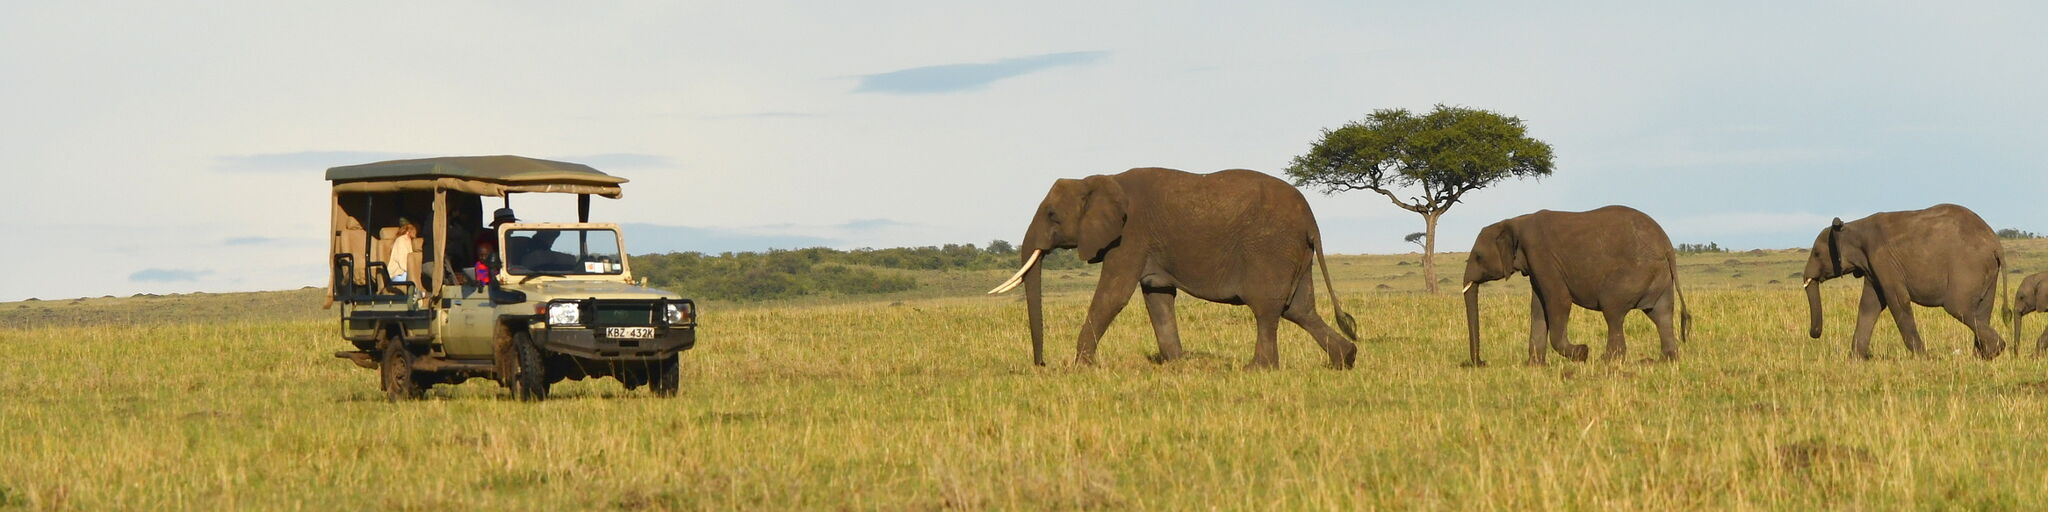 Masai Mara Elephants OSV banner